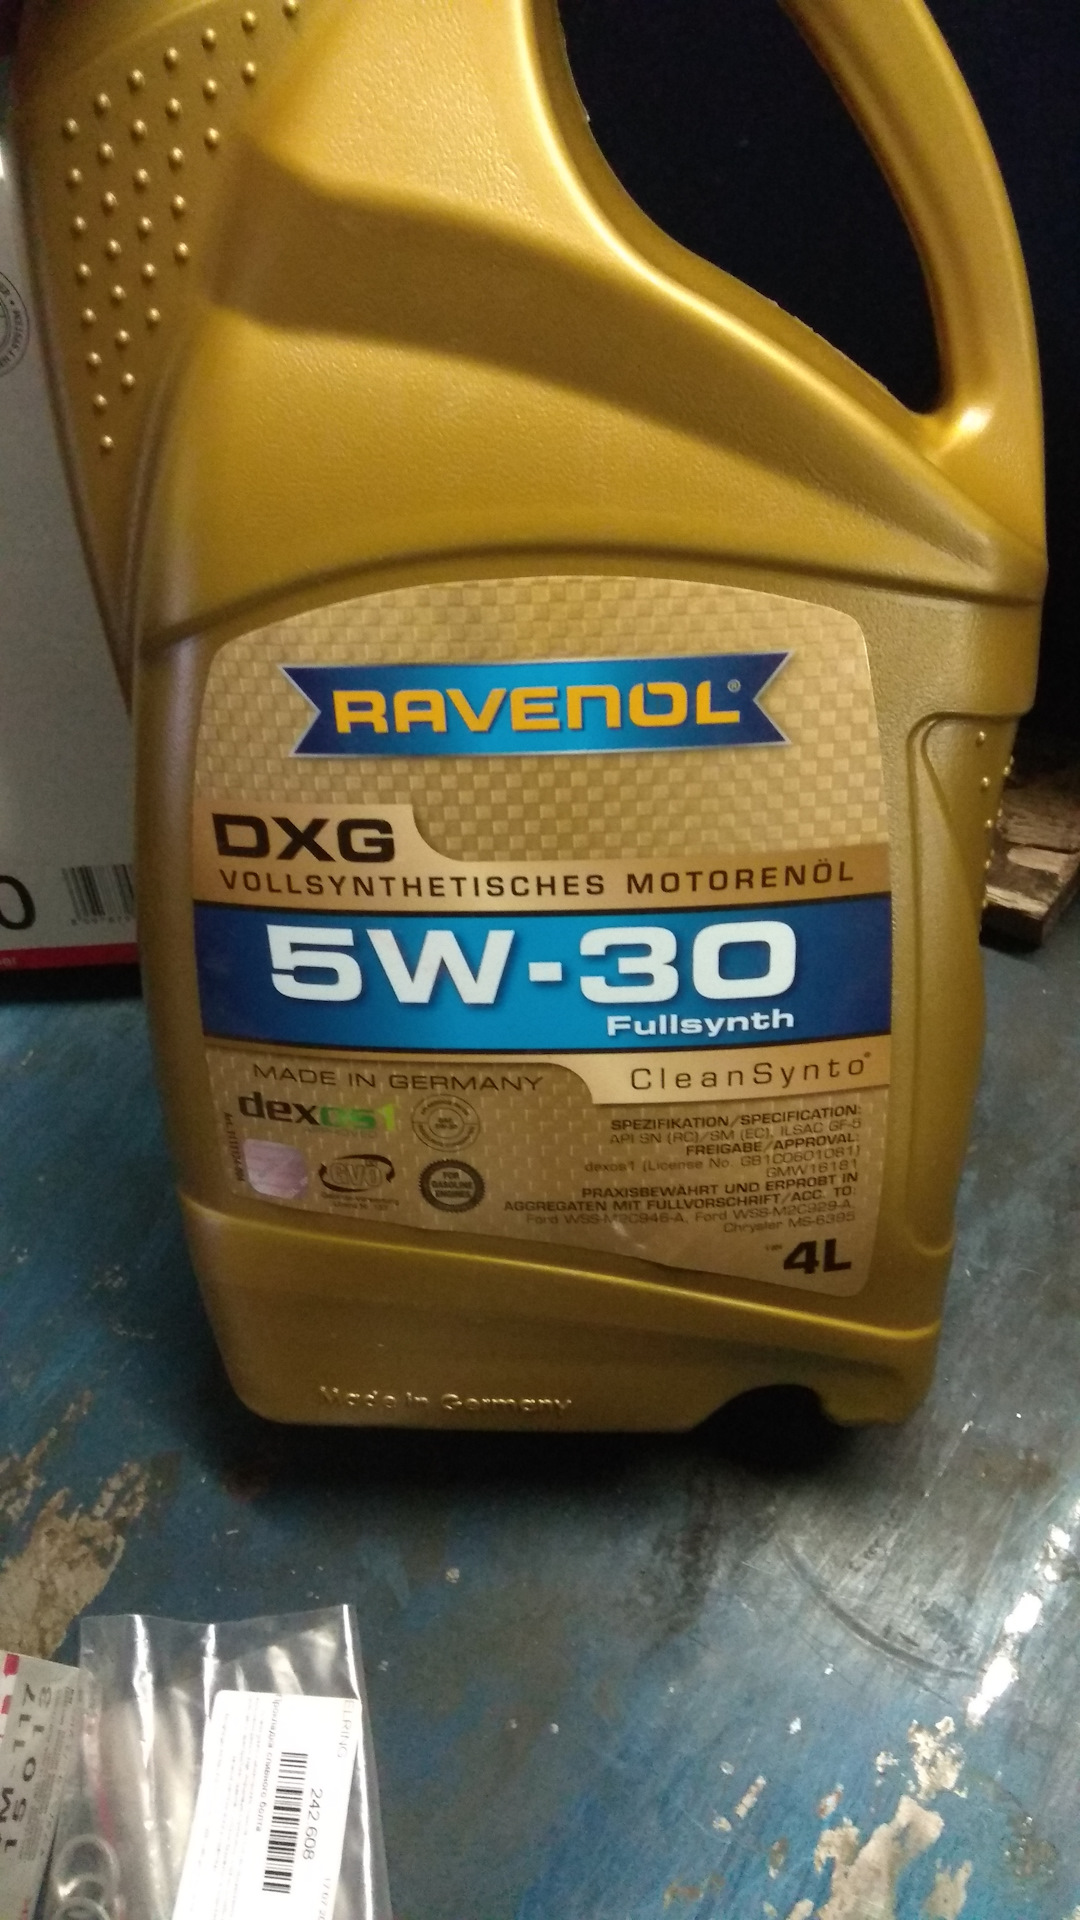 Ravenol hdx 5w 30